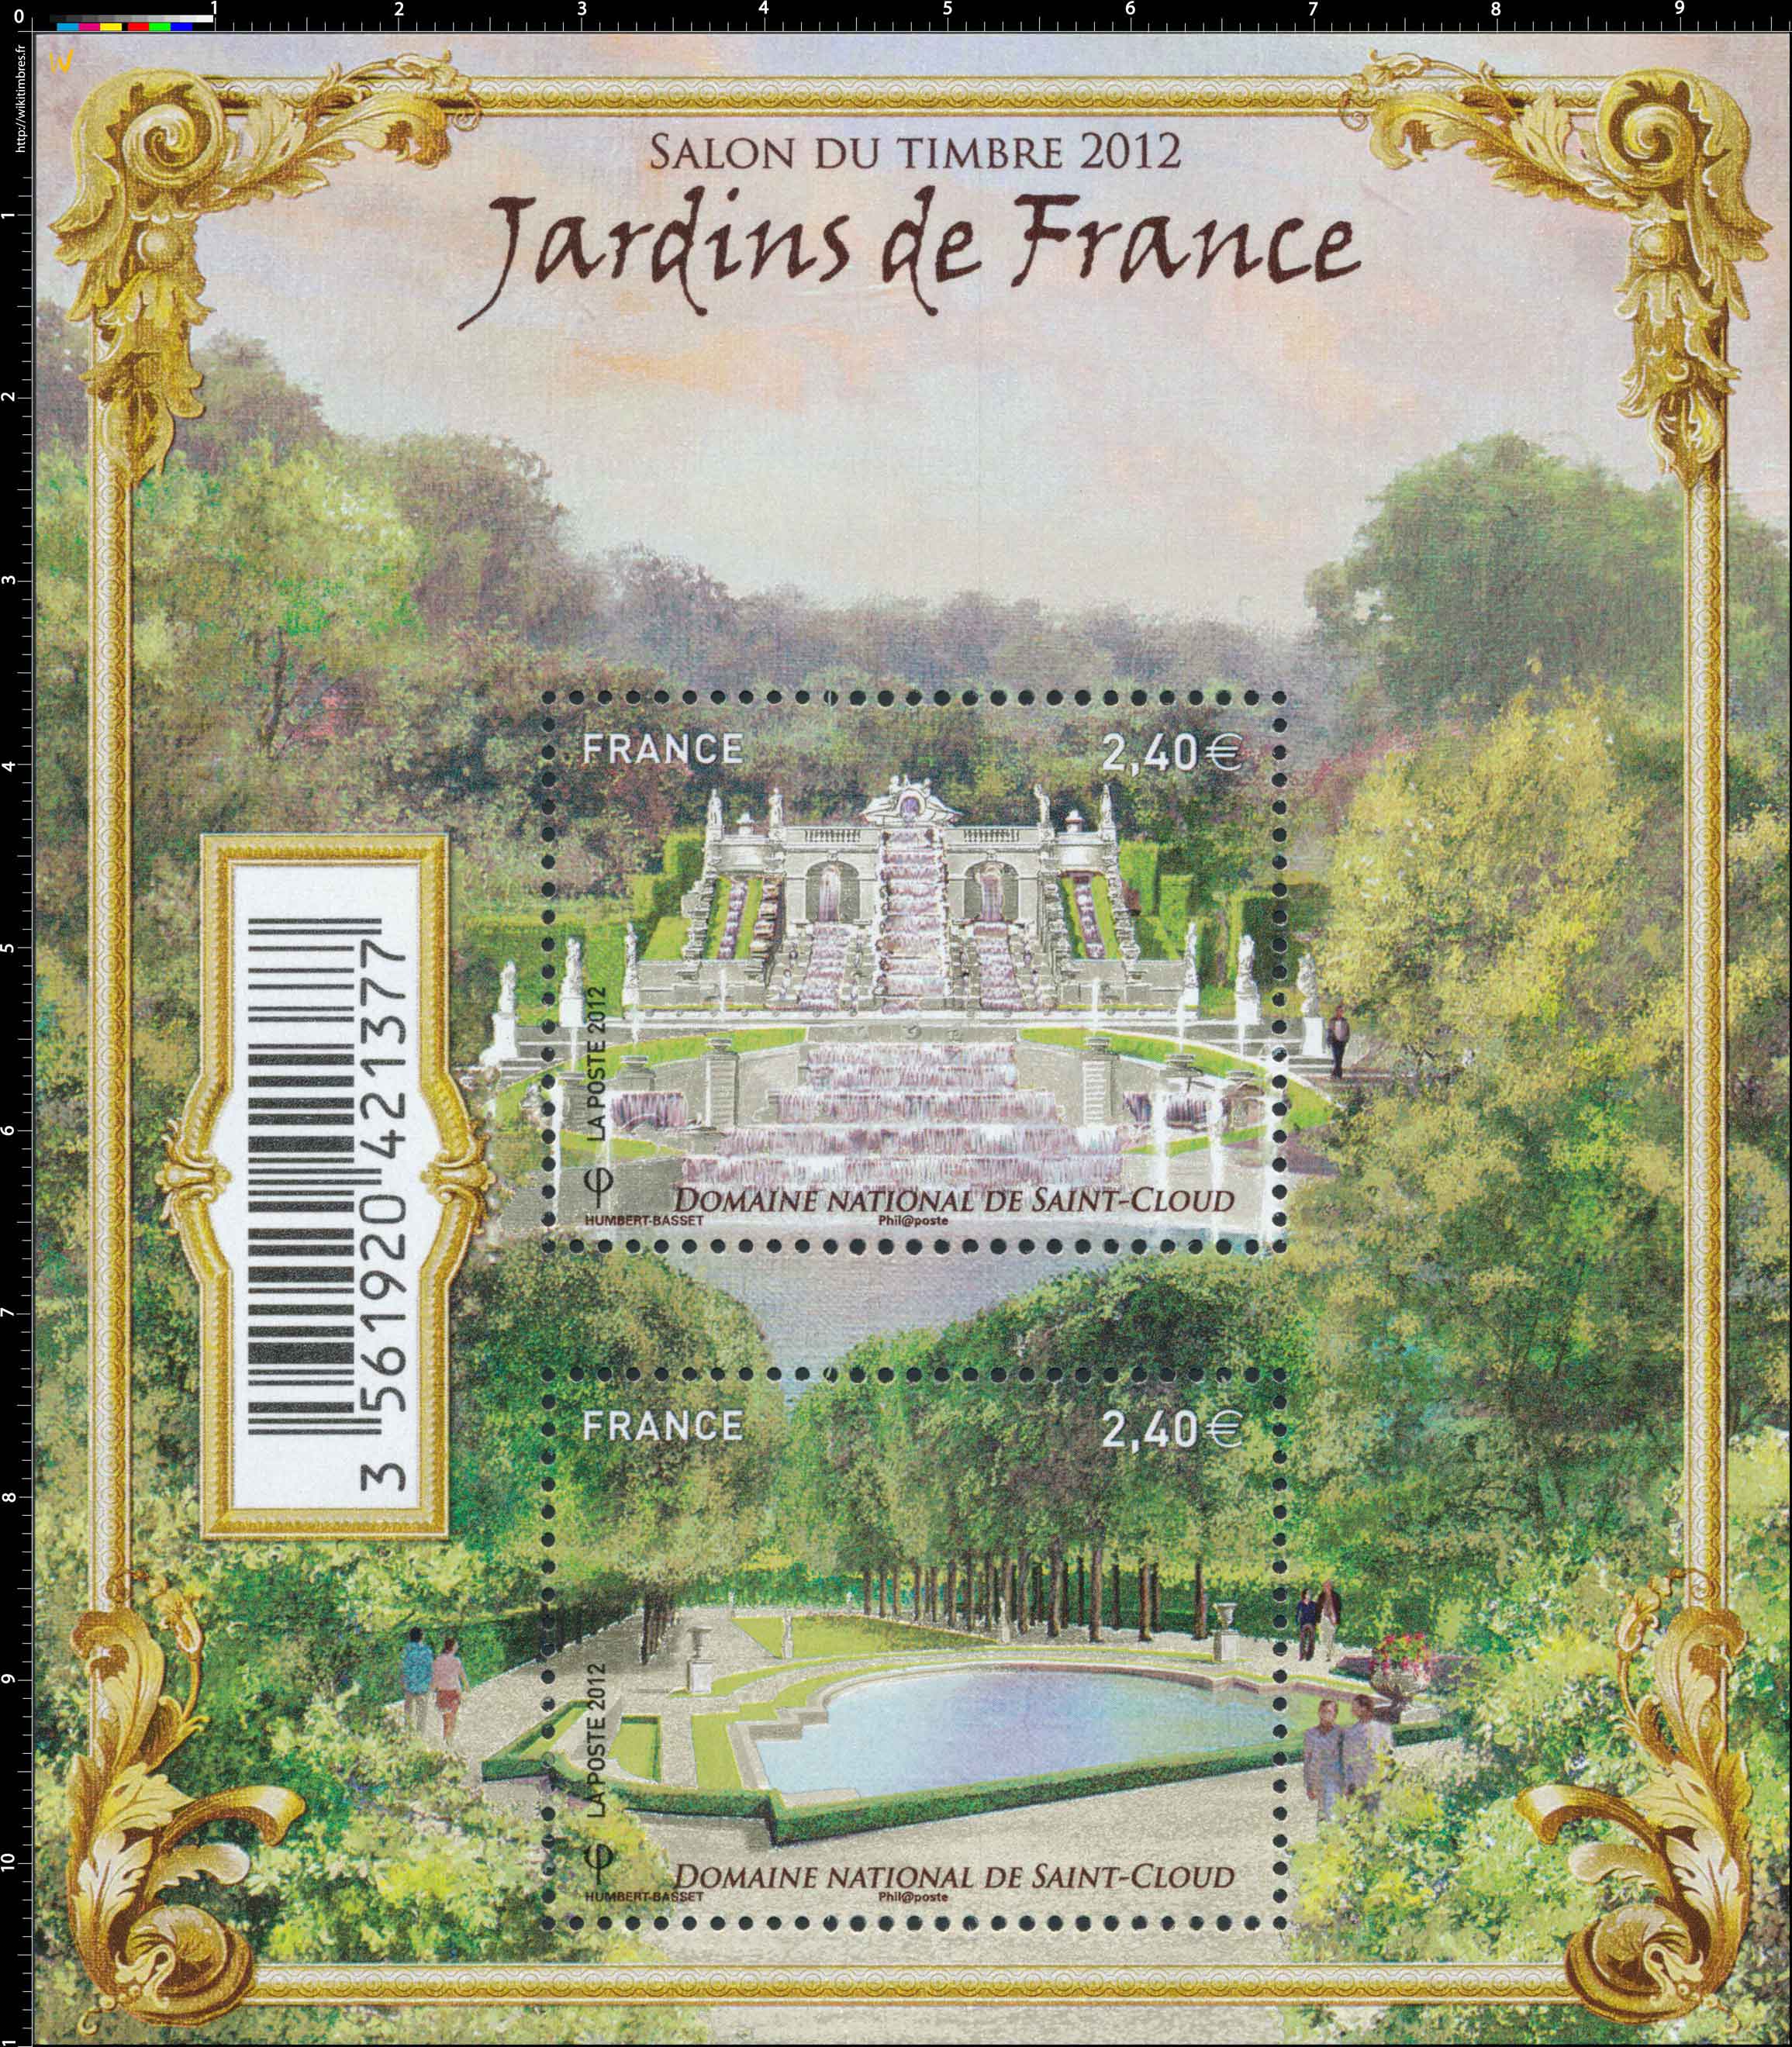 2012 JARDINS DE France Domaine National de Saint-Cloud